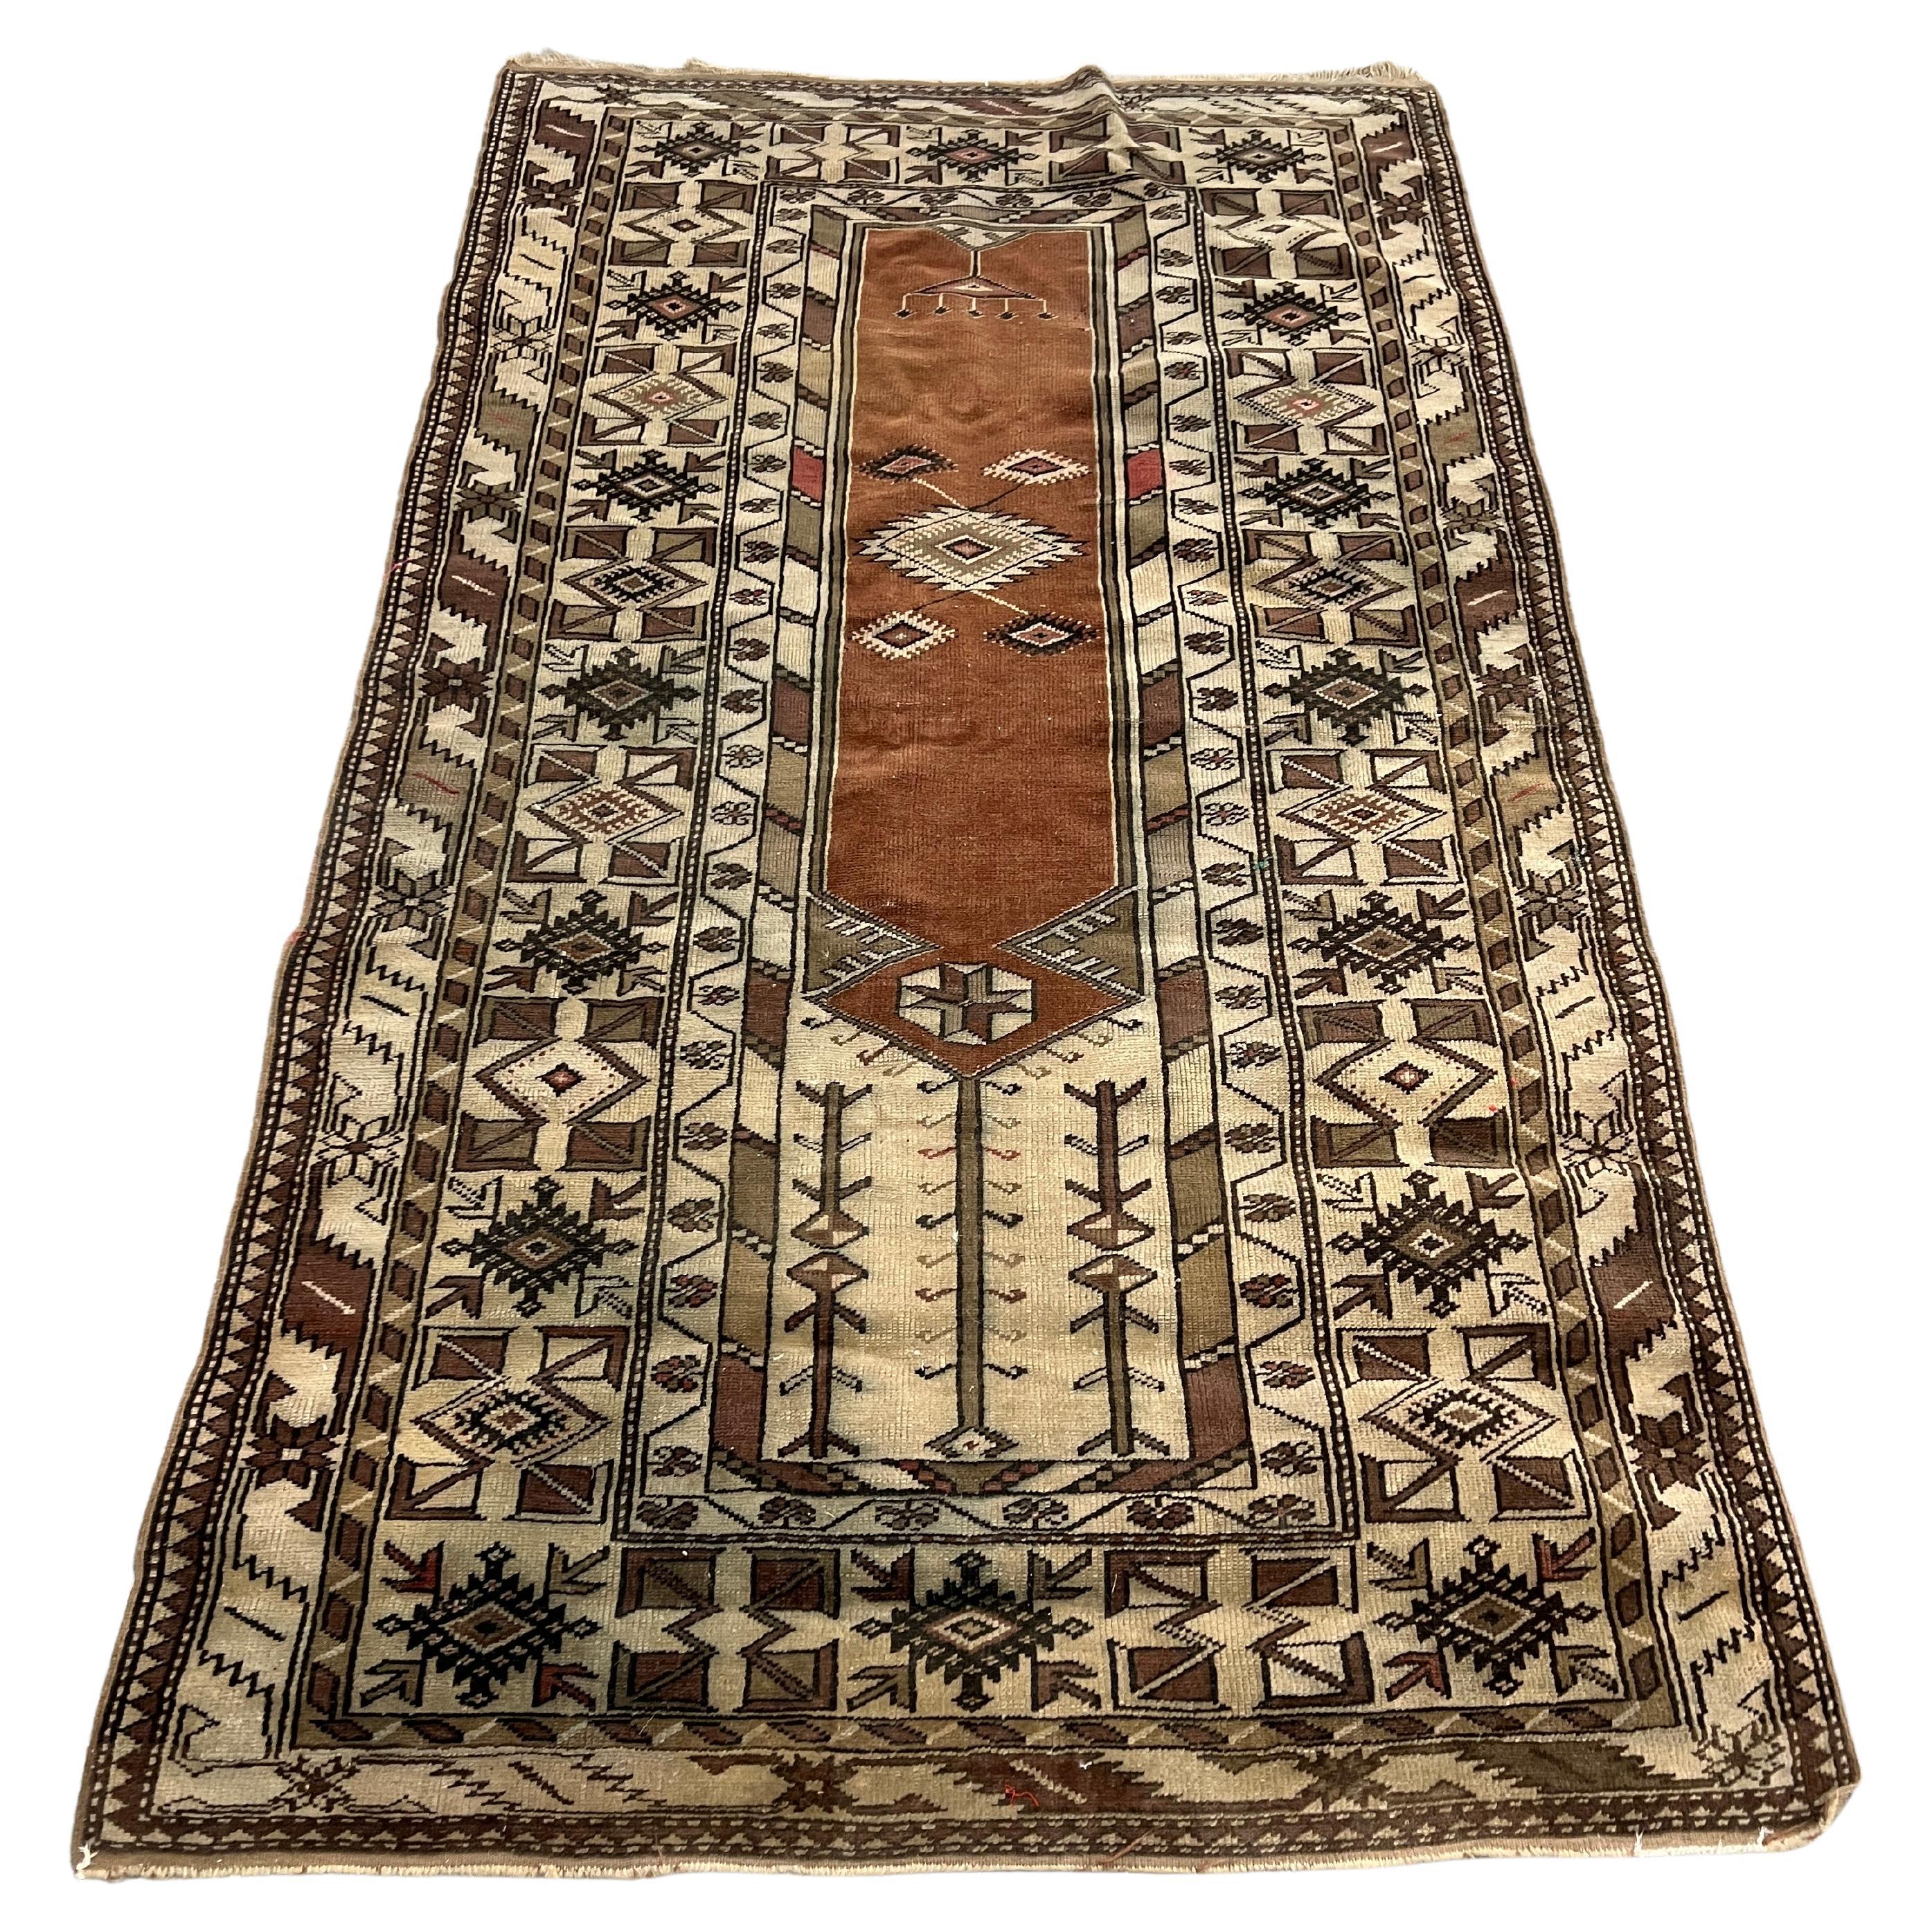 Antique Turkish Anatolian Wool Rug or Carpet  7'3" x 4'2"